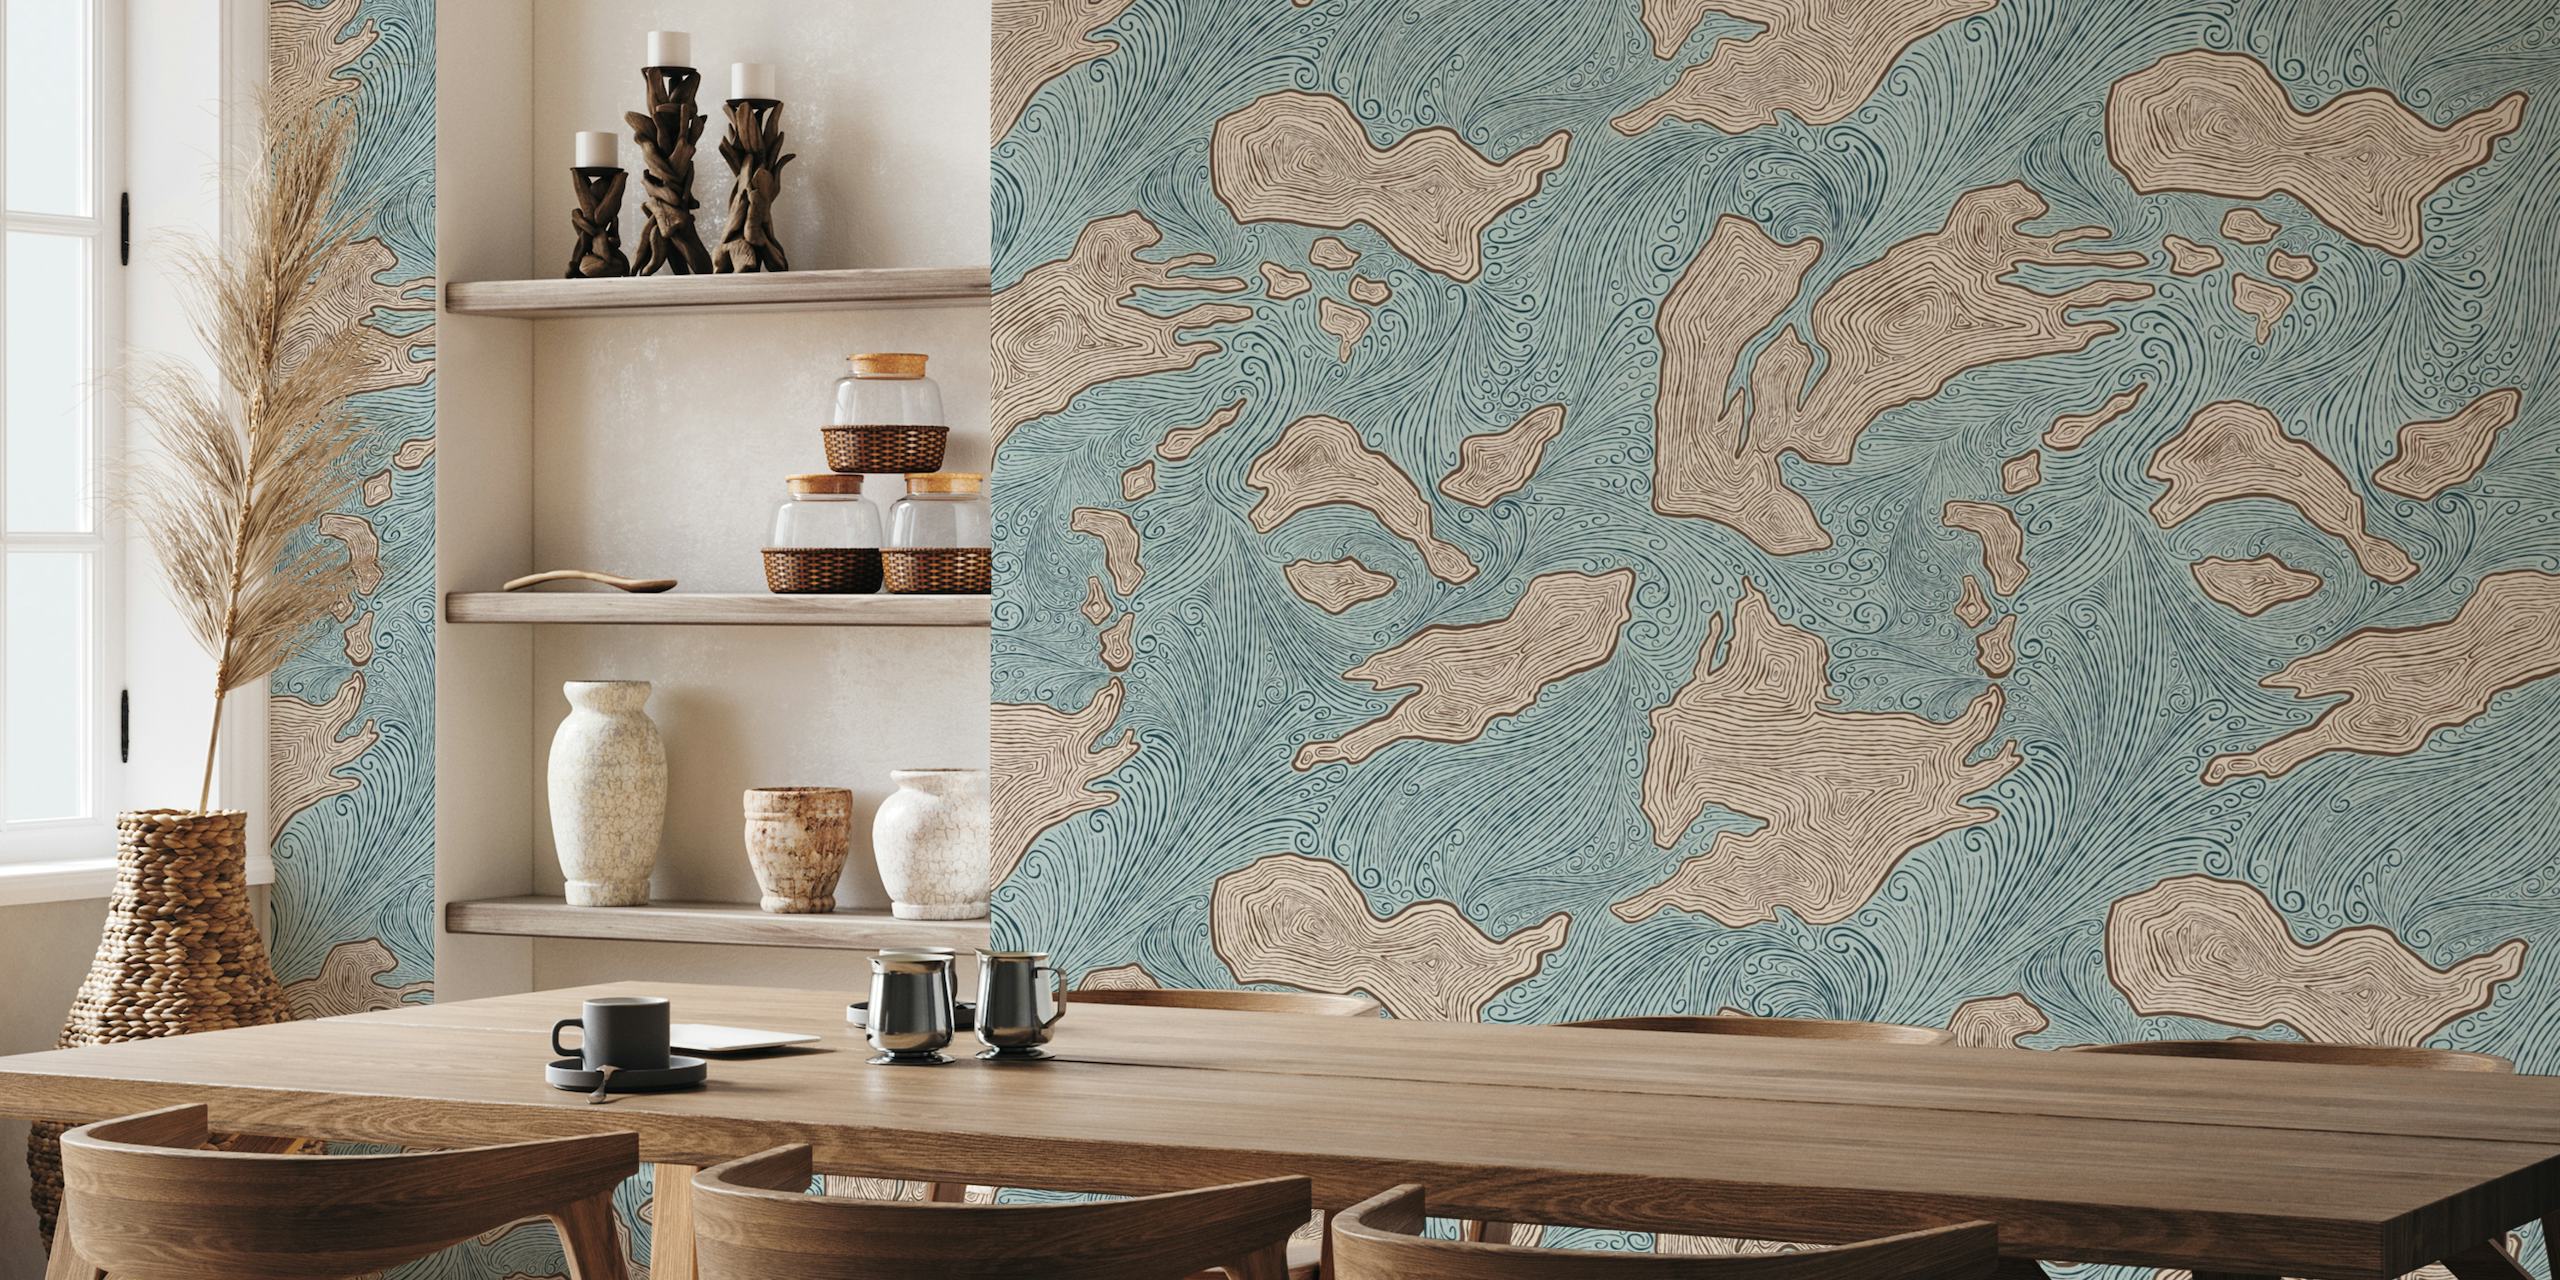 Abstract fotobehang met eilandvormen in rustgevende blauw- en aardetinten genaamd 'Undiscovered Islands'.